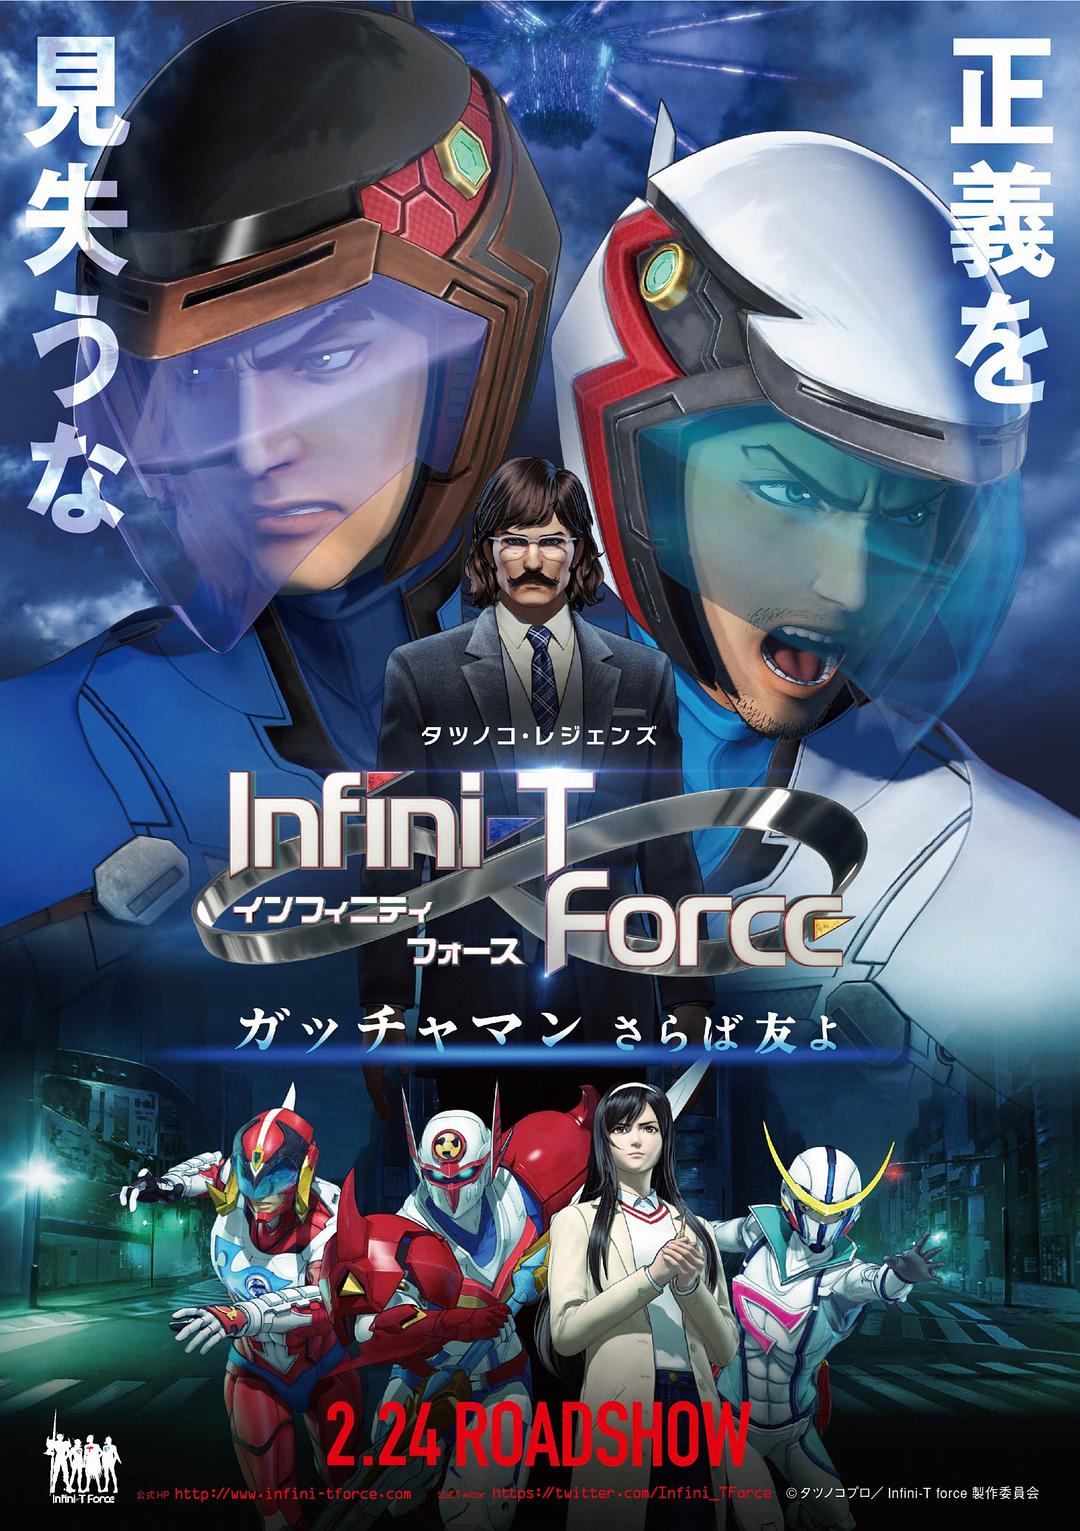 Infini-T Force剧场版 飞鹰侠 再见了朋友海报